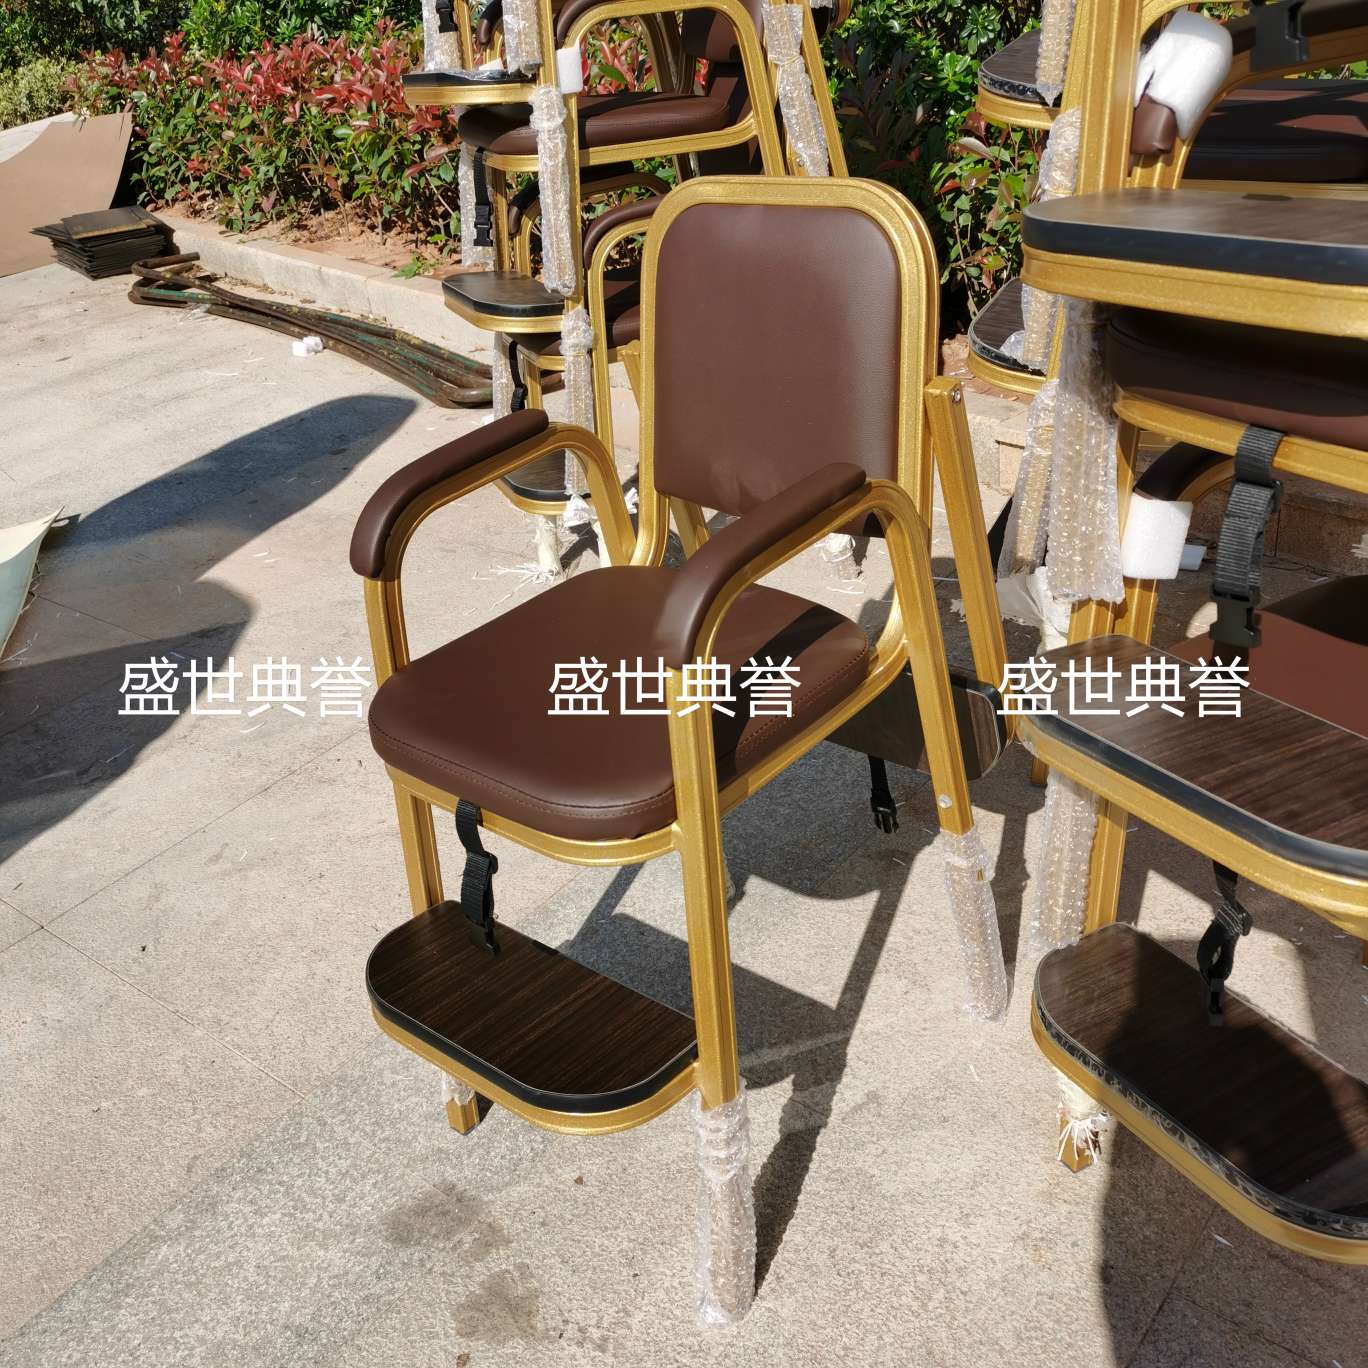 上海五星级酒店宴会厅宝宝餐椅饭店包厢儿童就餐椅子铝合金宝宝椅白底实物图